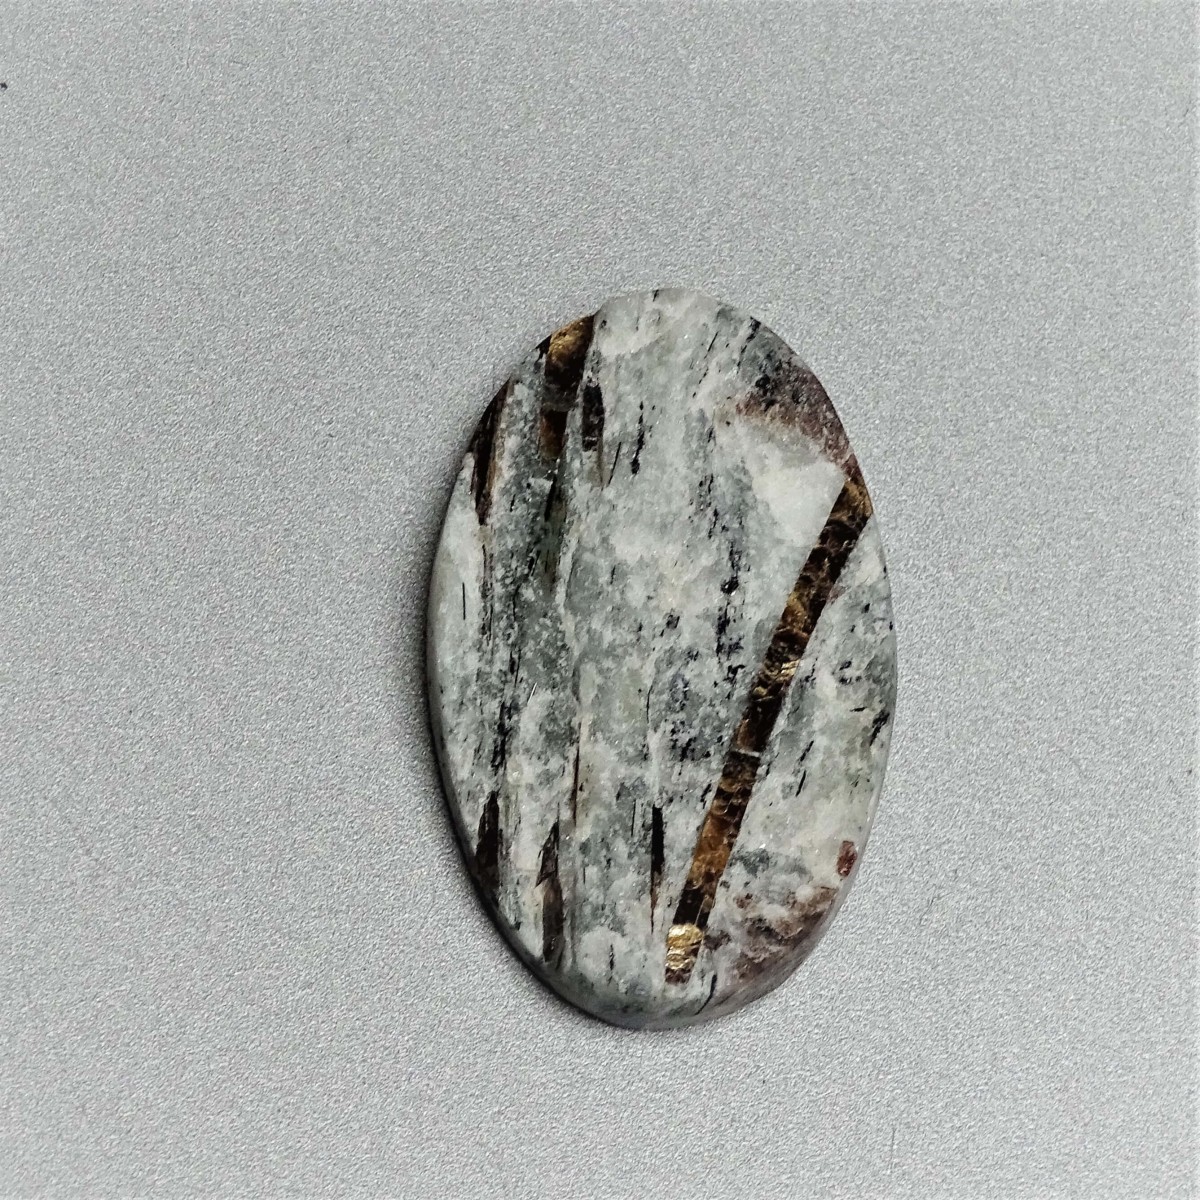 Astrophyllit-Cabochon, natürliches, unpoliertes Mineral 10,1g, Russland